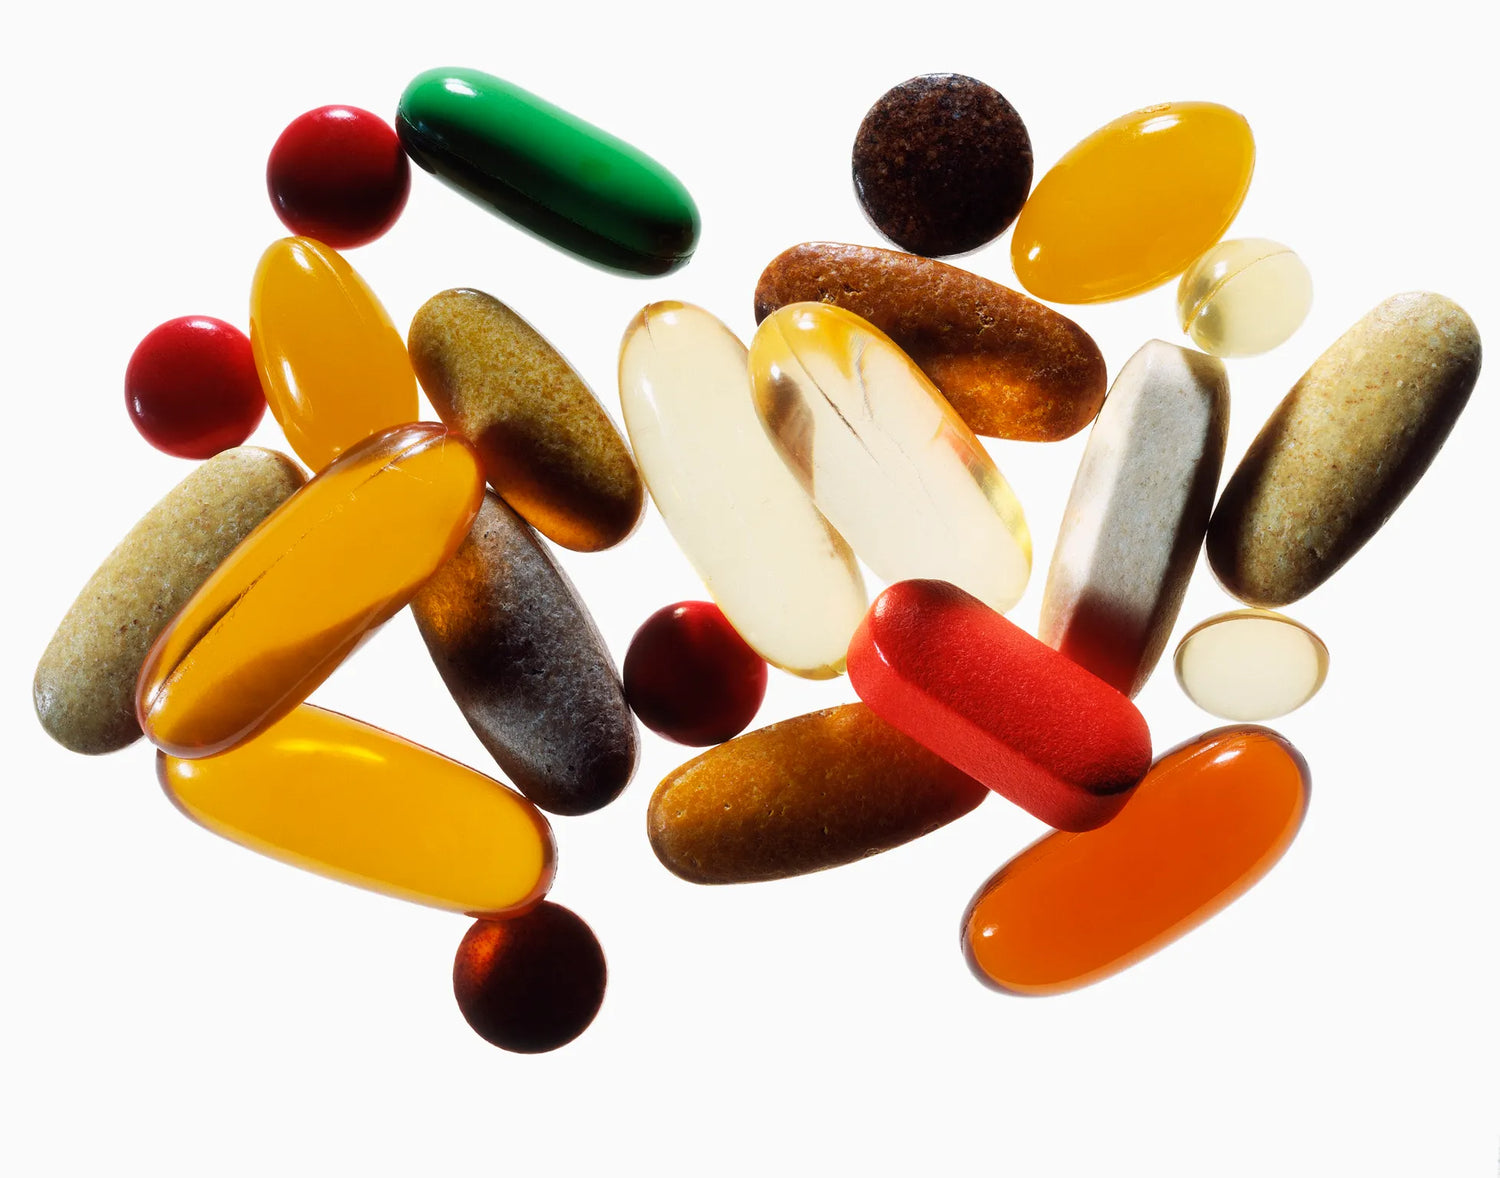 Vitamin & Supplement